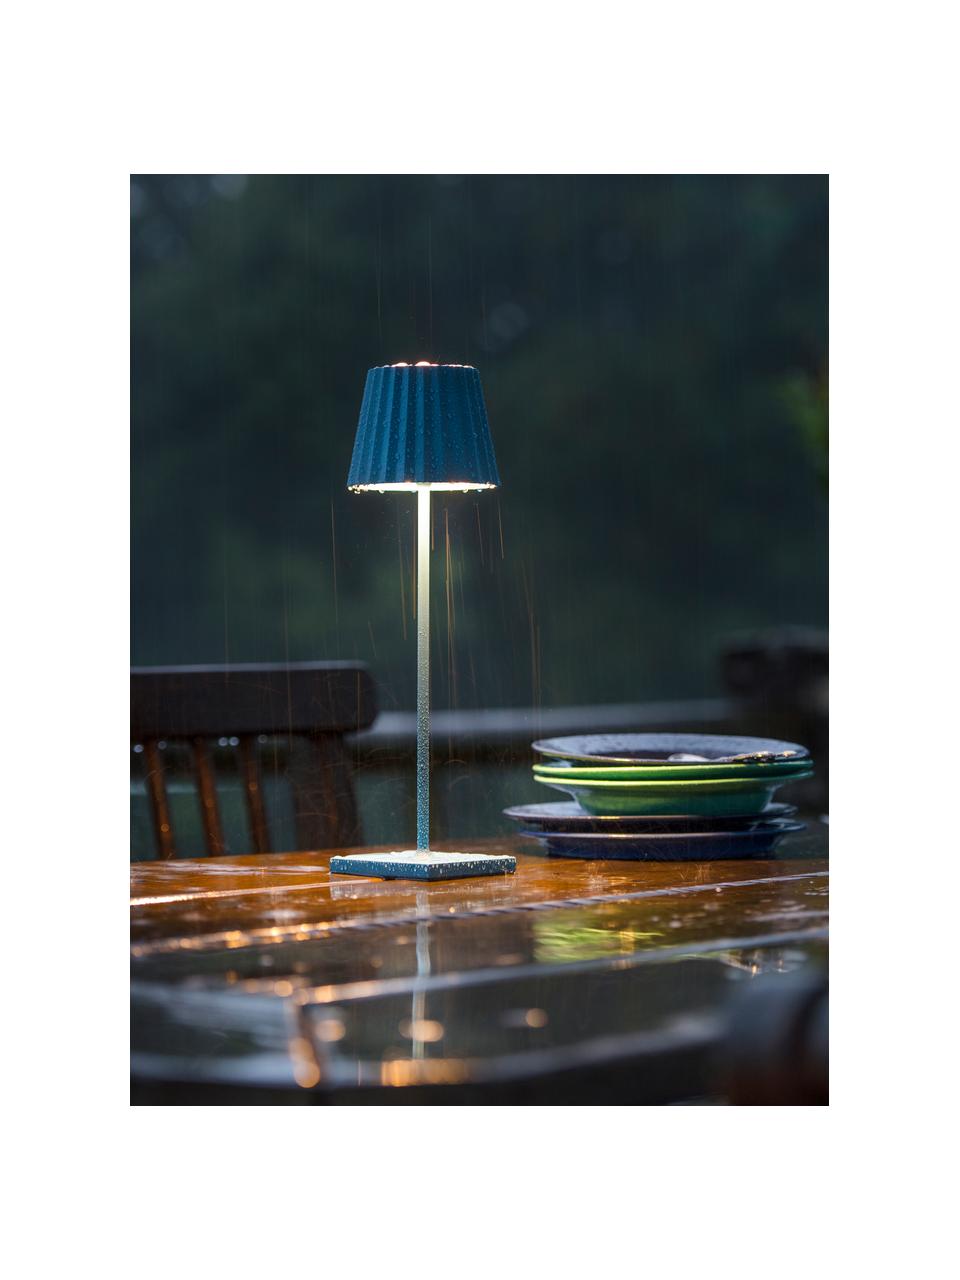 Lampada dimmerabile mobile da tavolo per esterni blu Trellia, Paralume: alluminio rivestito, Blu, nero, Ø 12 x Alt. 38 cm